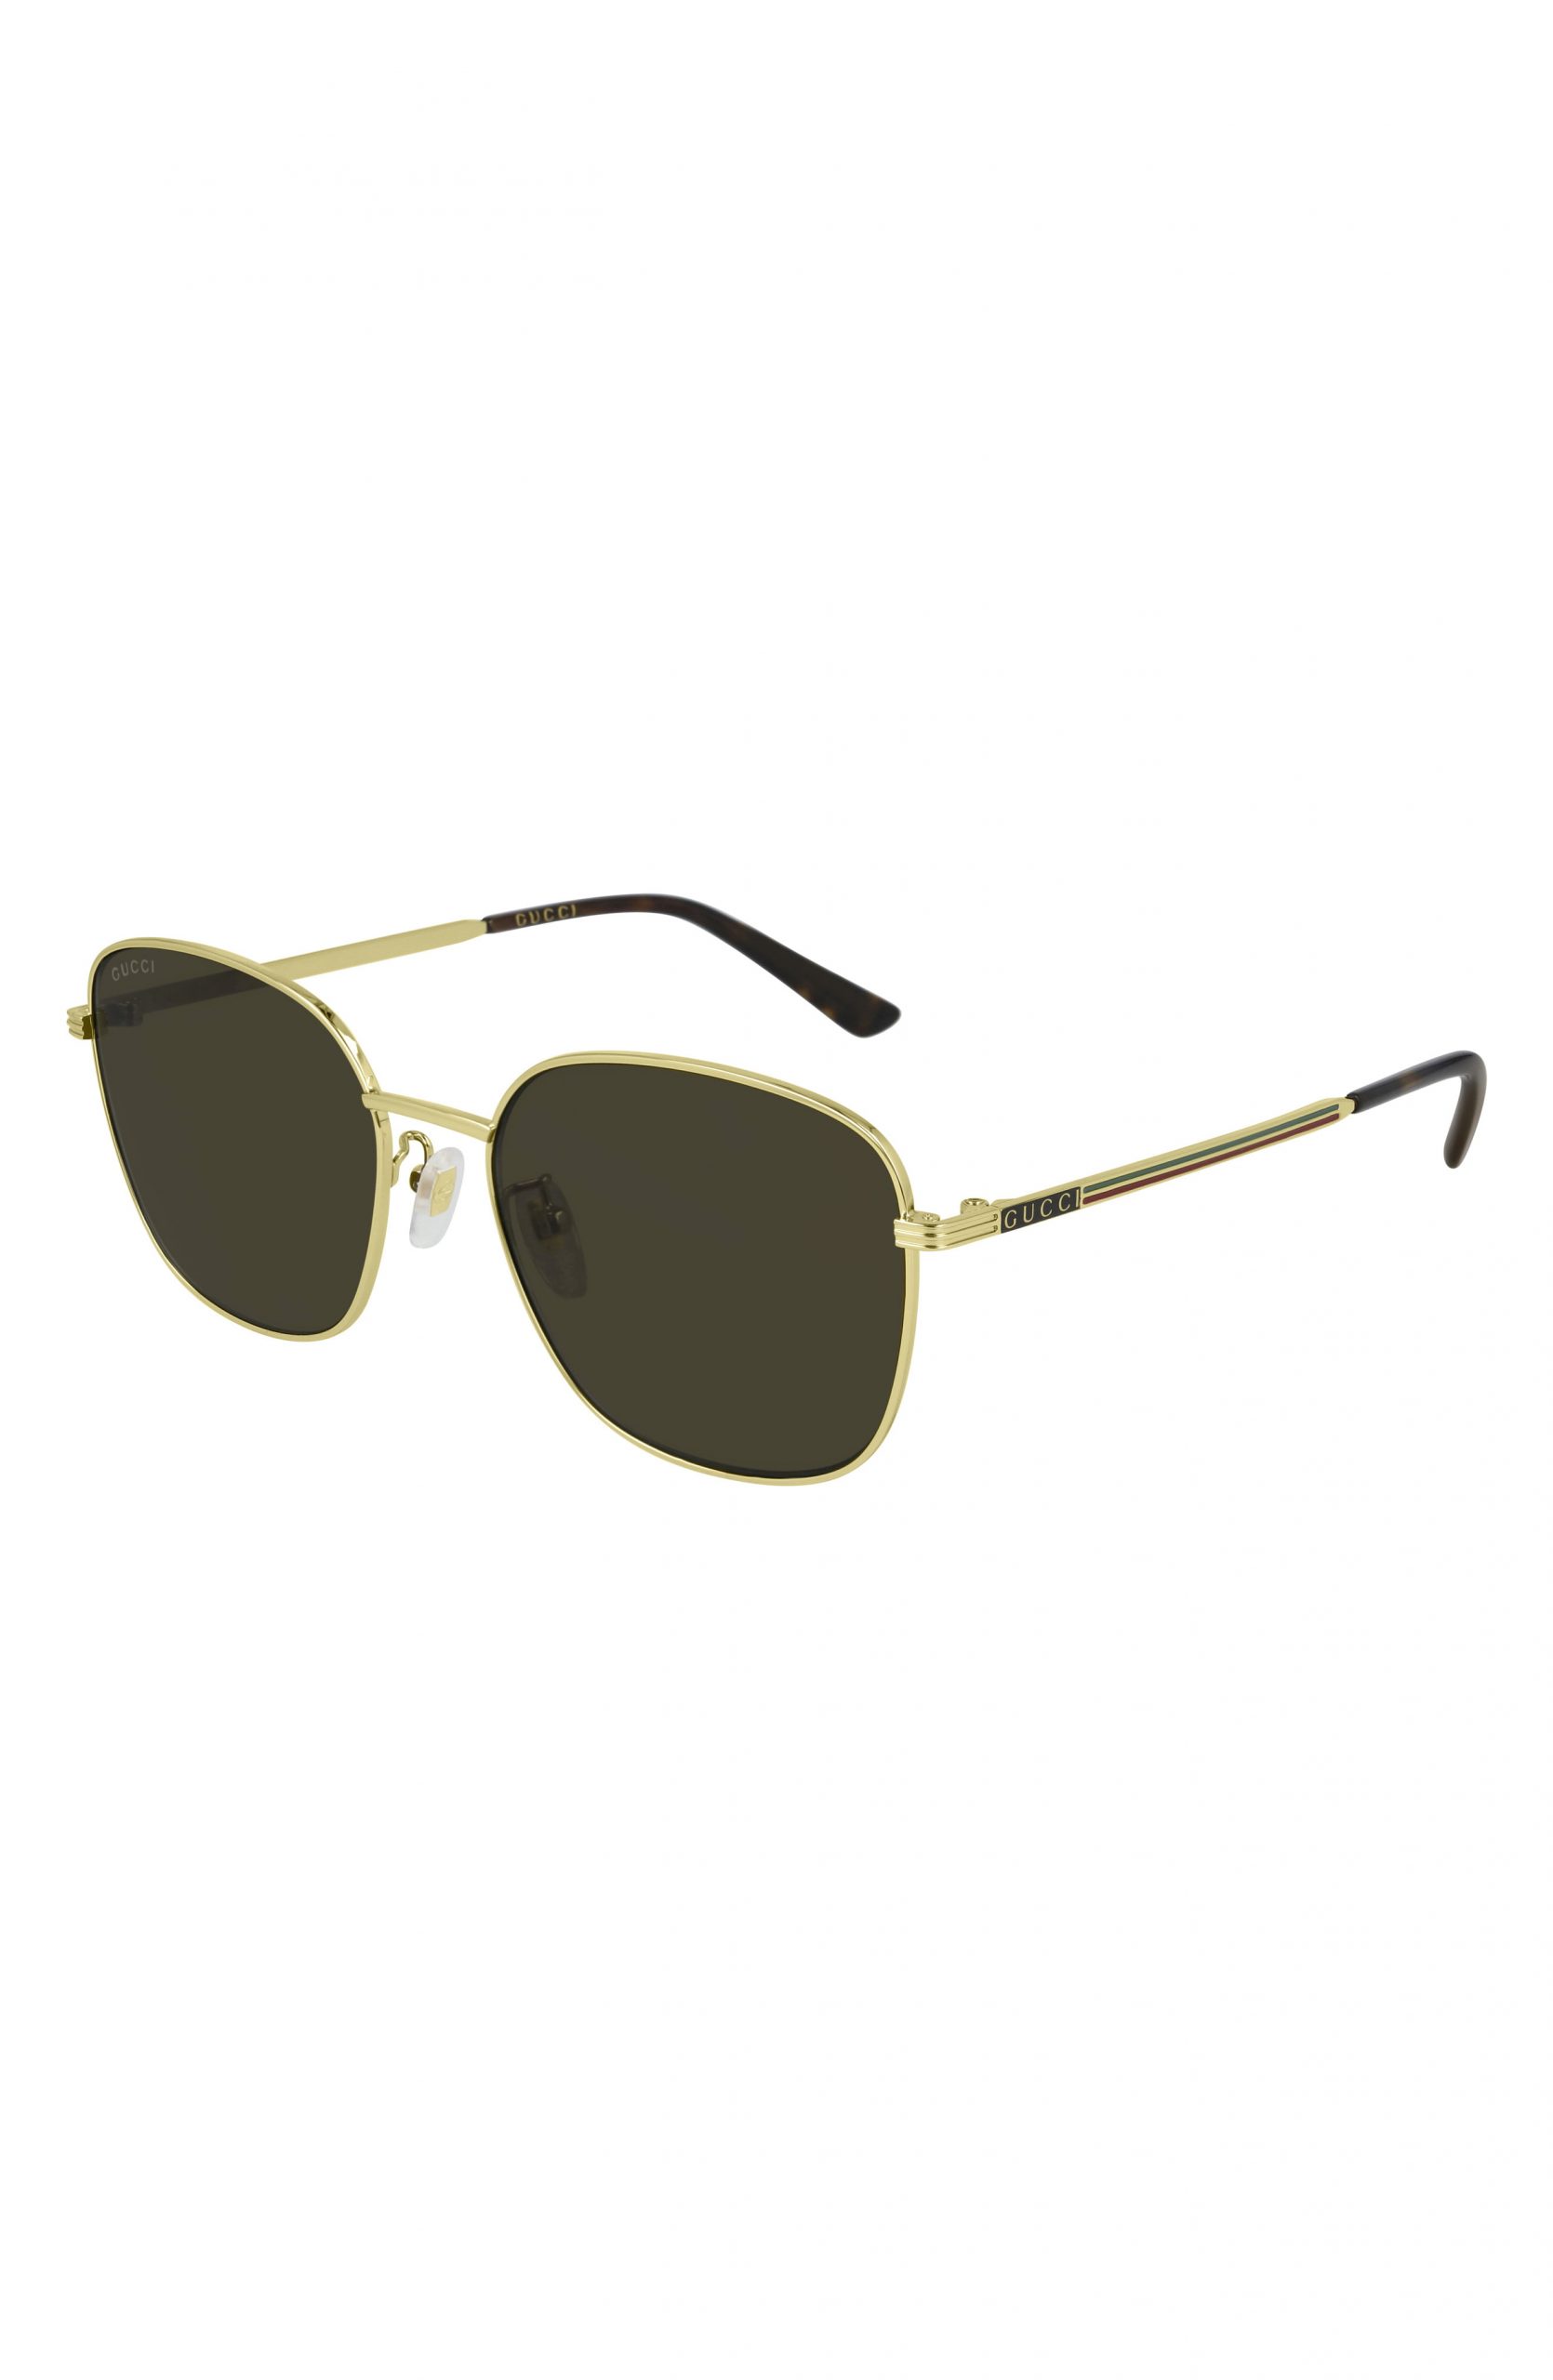 Men’s Gucci 57mm Square Sunglasses - Endura Gold/ Brown | The Fashionisto